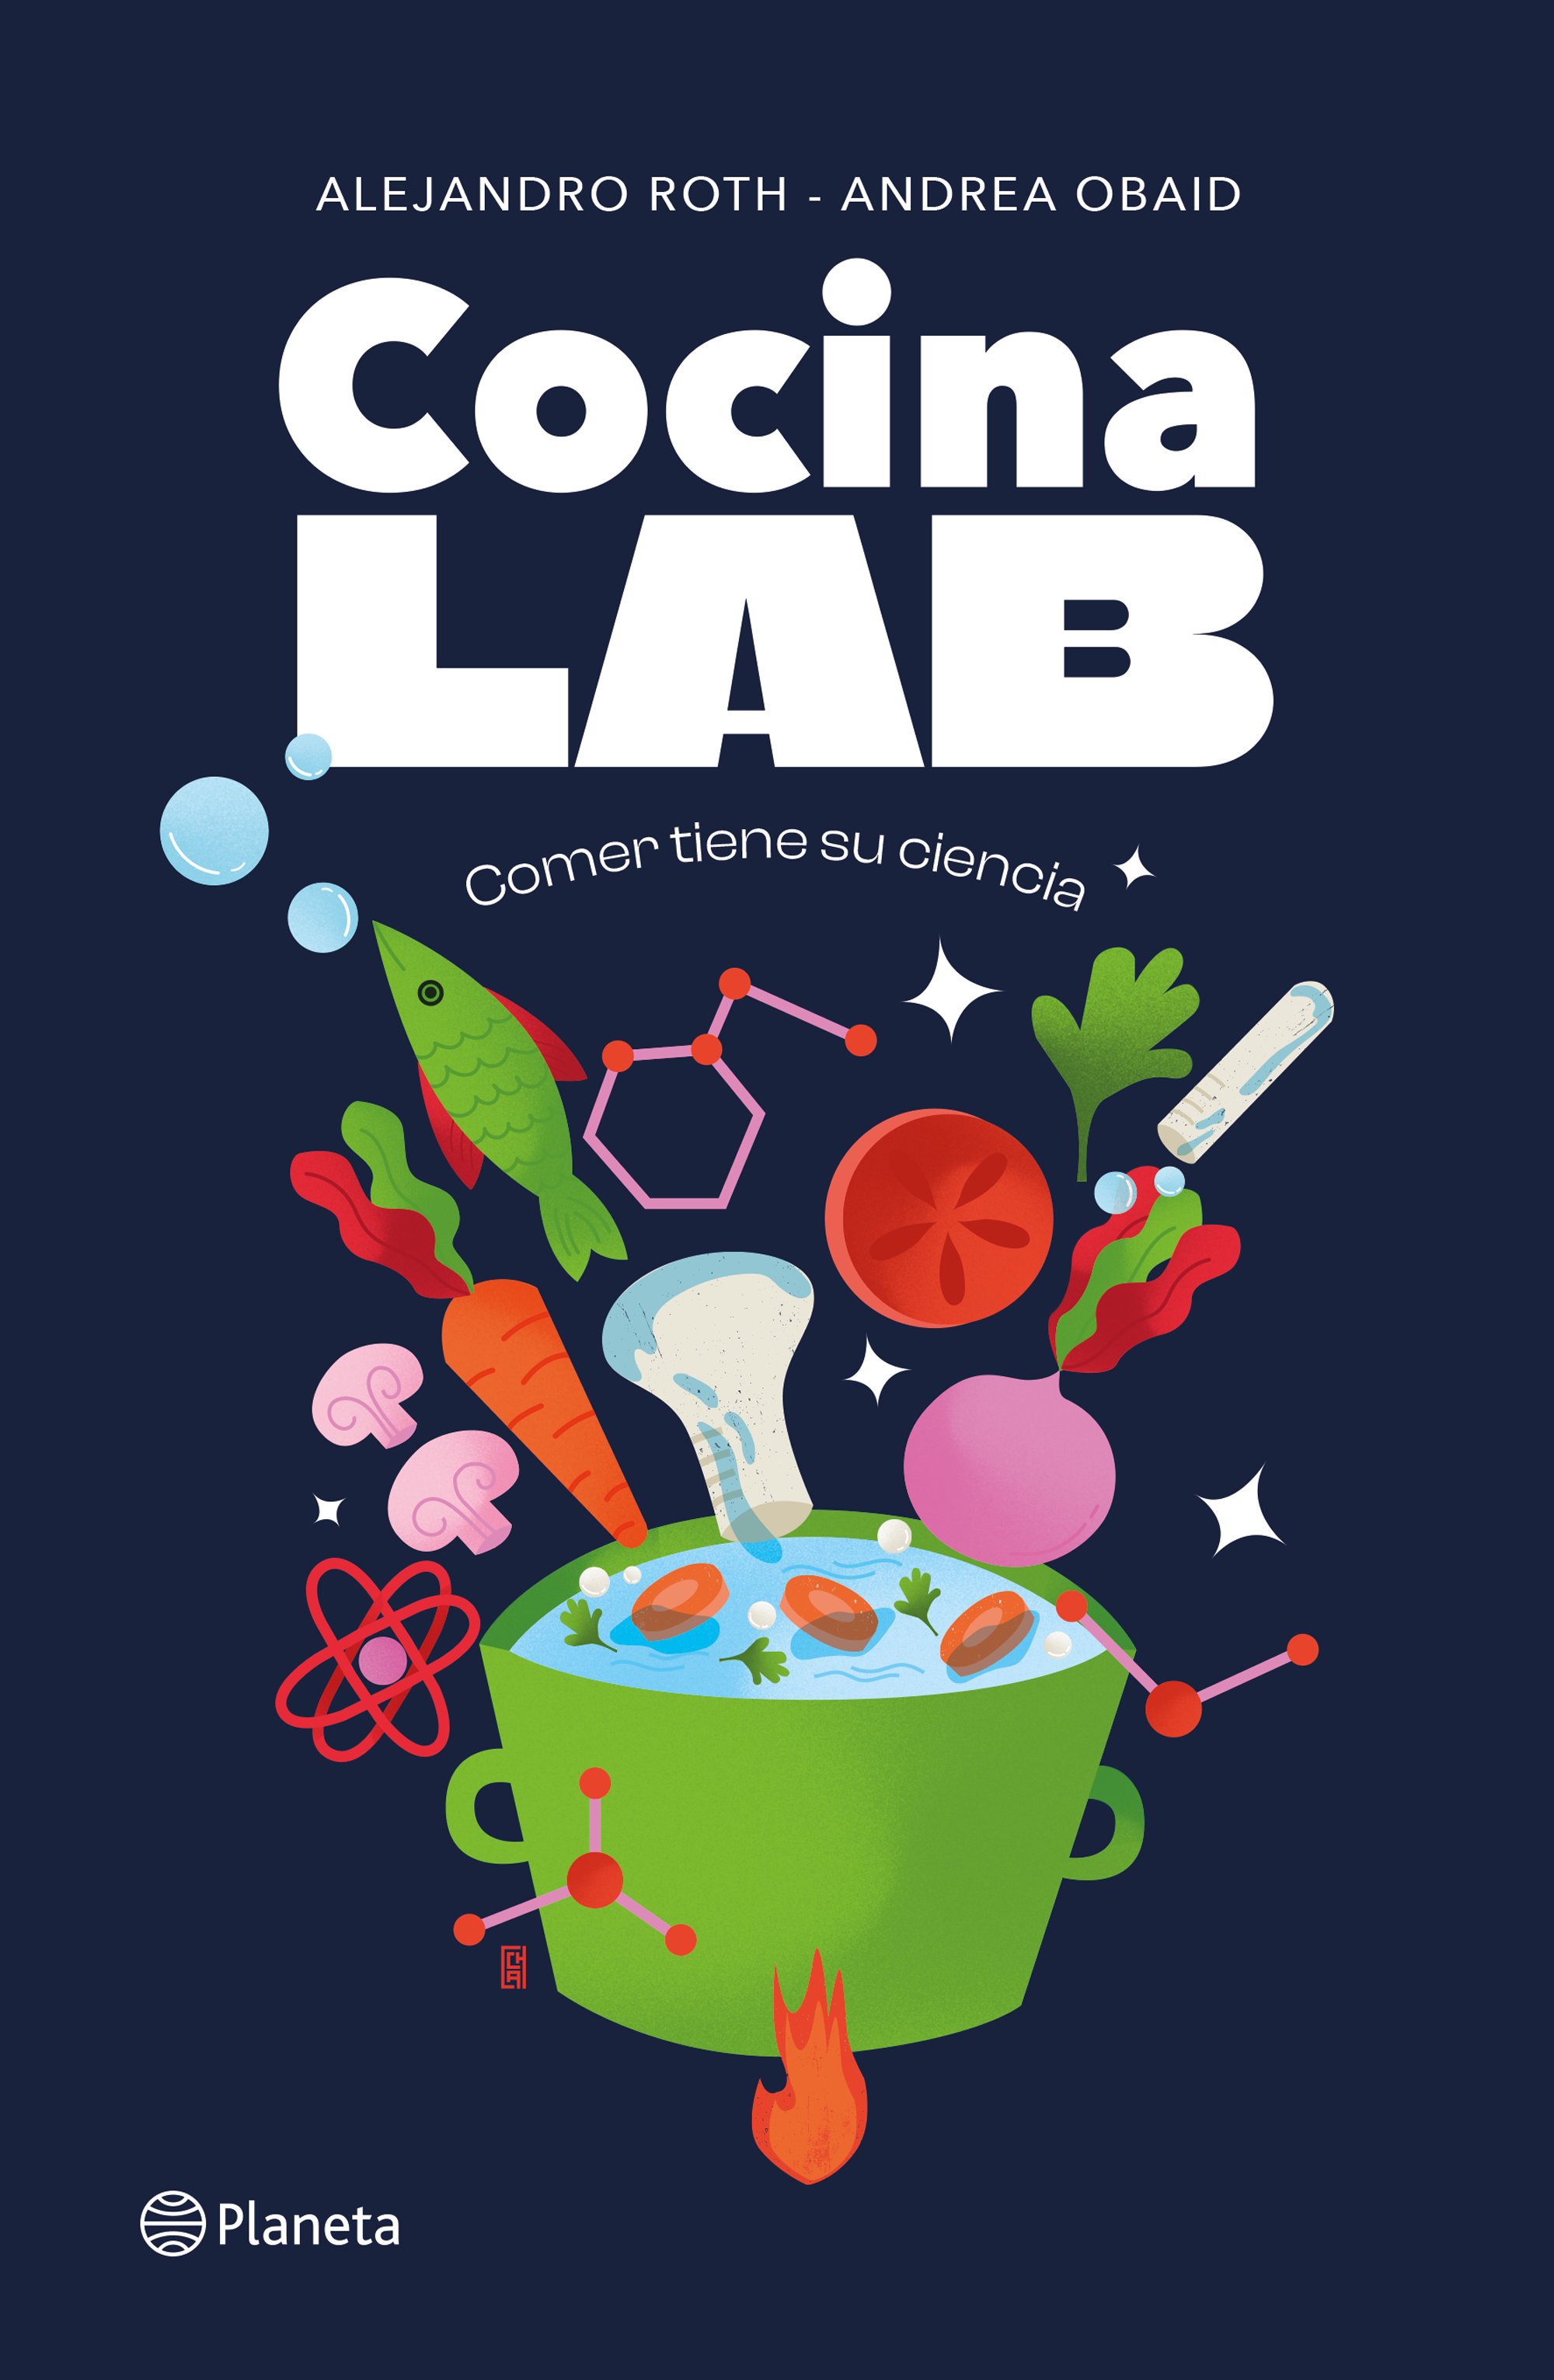 Cocina Lab -  Alejandro Roth, Andrea Obaid